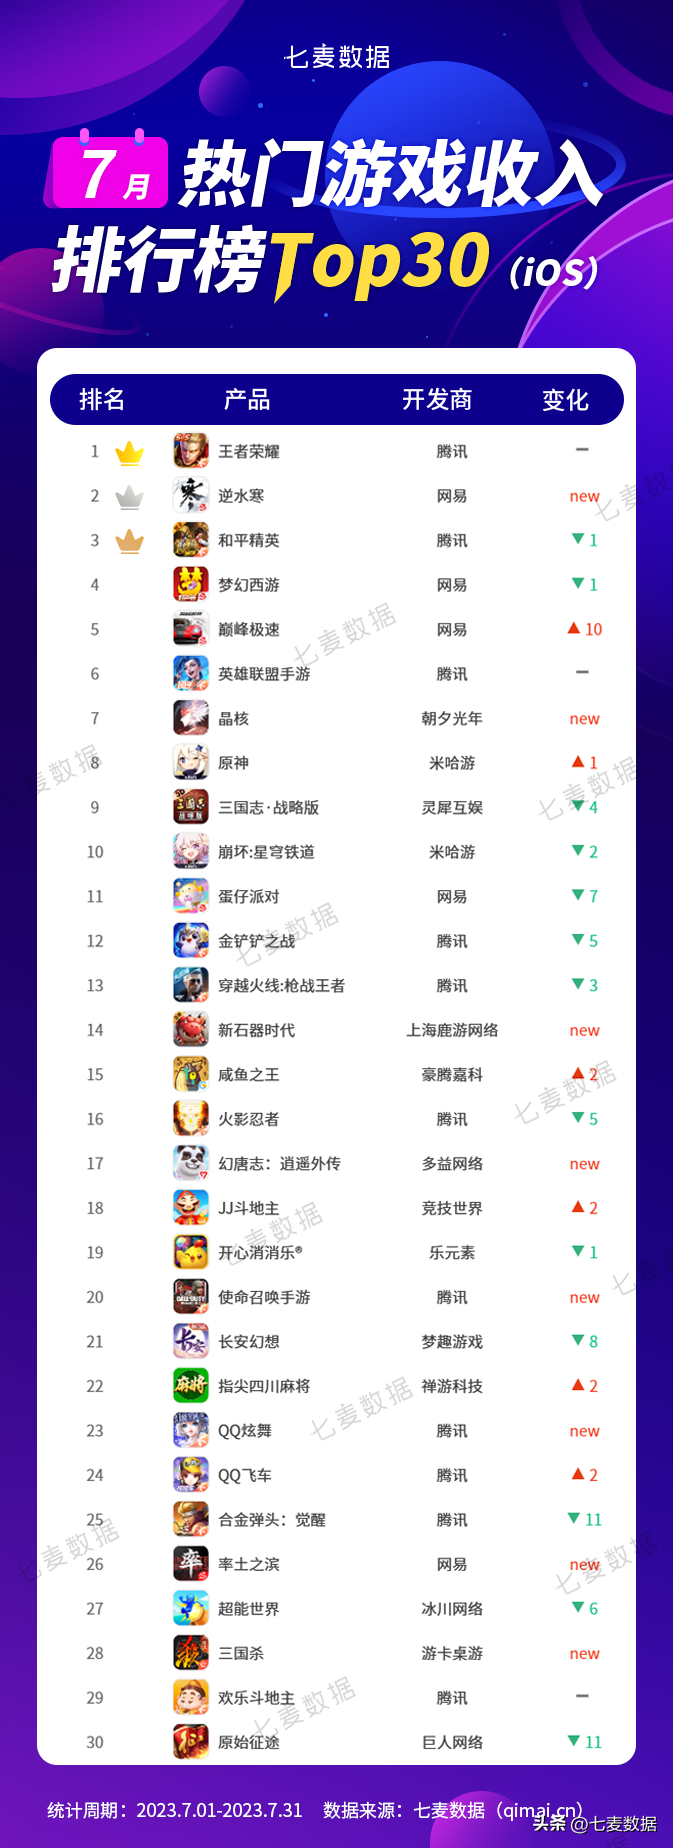 最热门网络游戏排行榜(最新游戏下载榜TOP30名单)